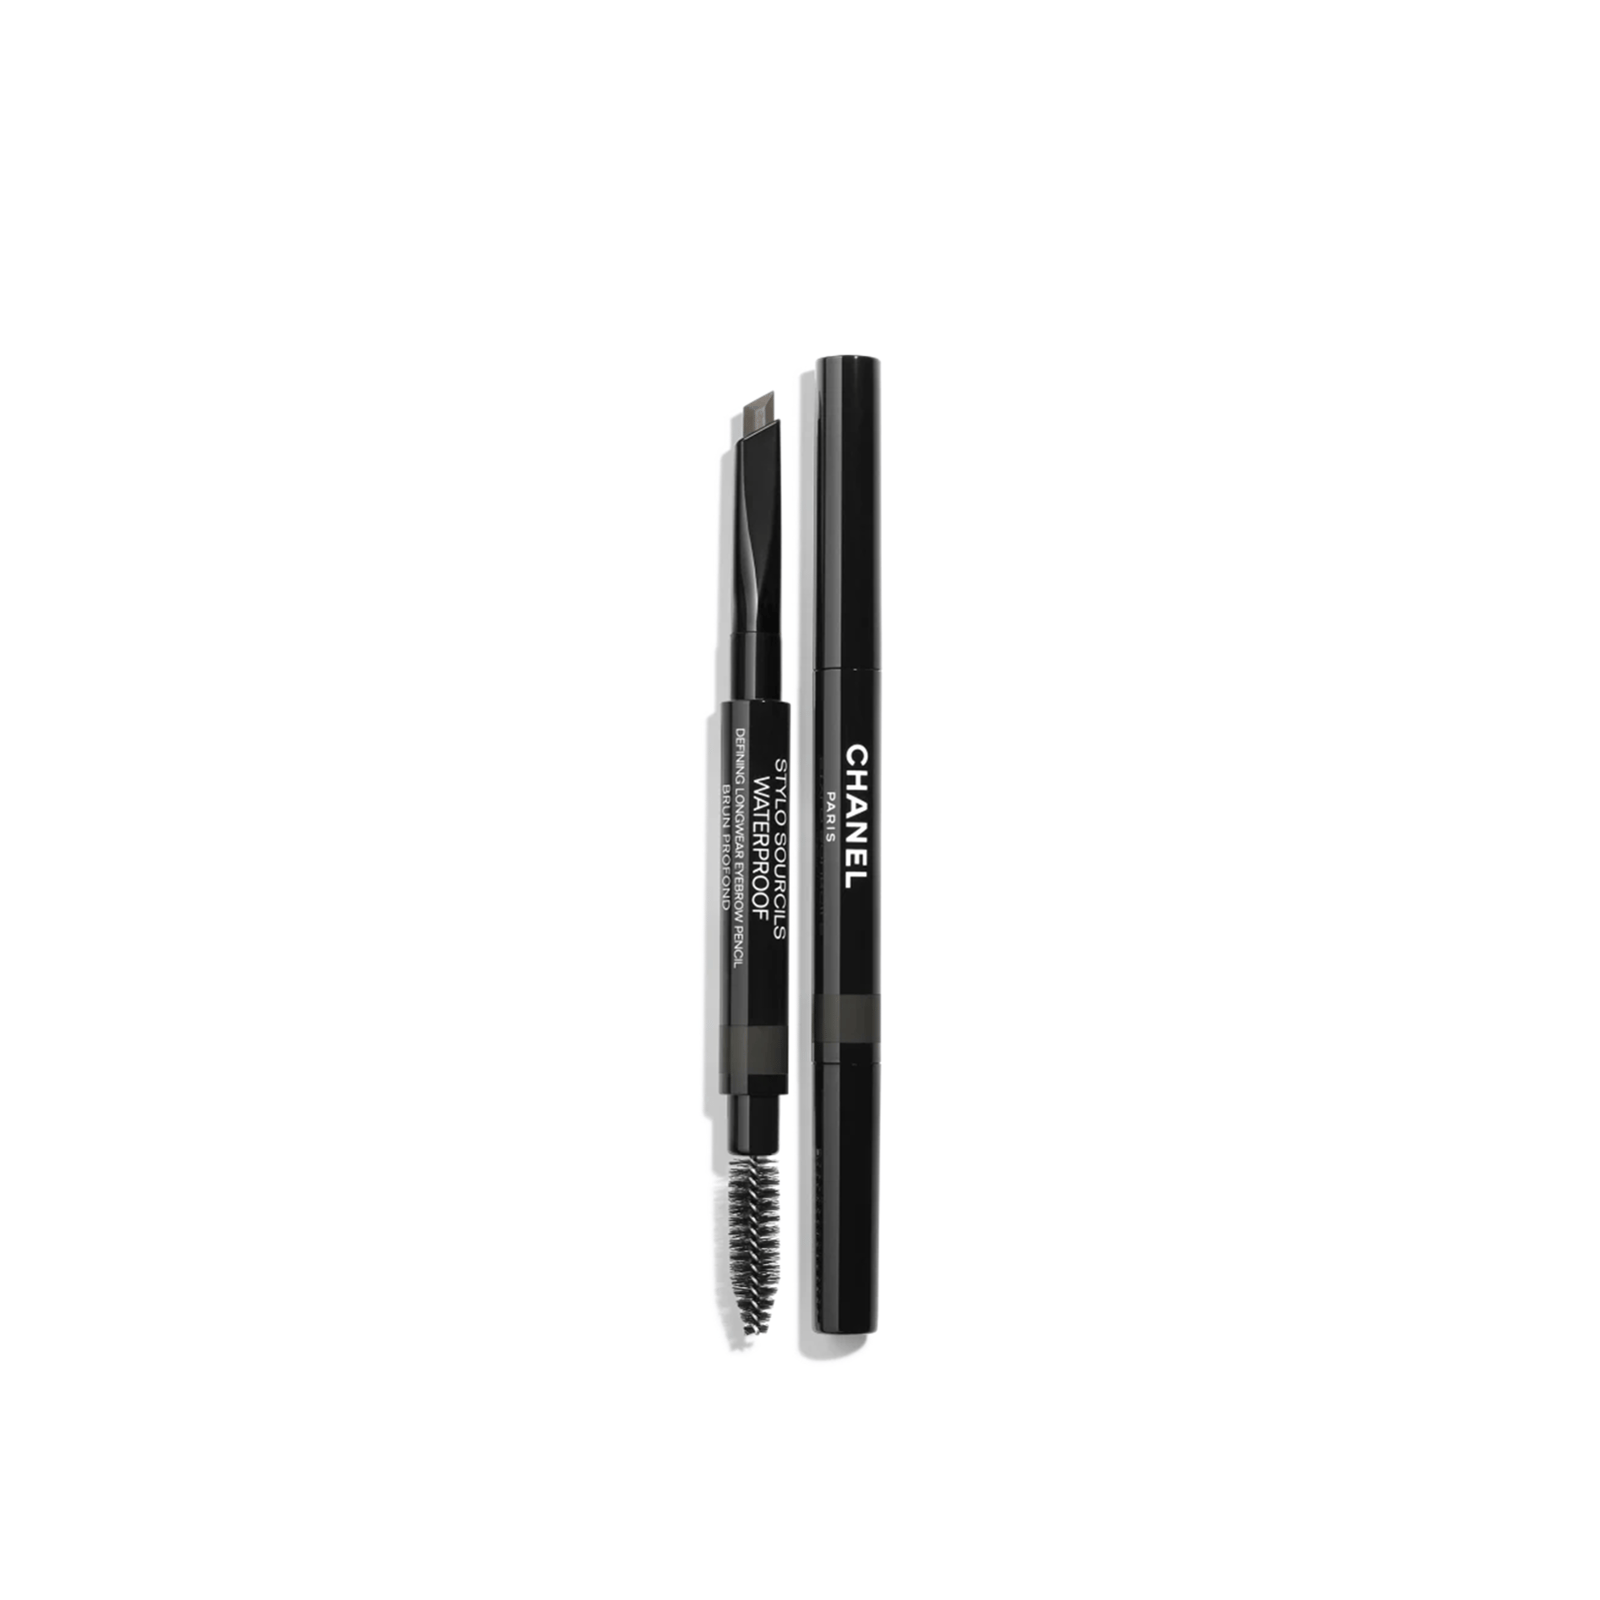 CHANEL Stylo Sourcils Waterproof Defining Longwear Eyebrow Pencil 810 Brun Profond 0.27g